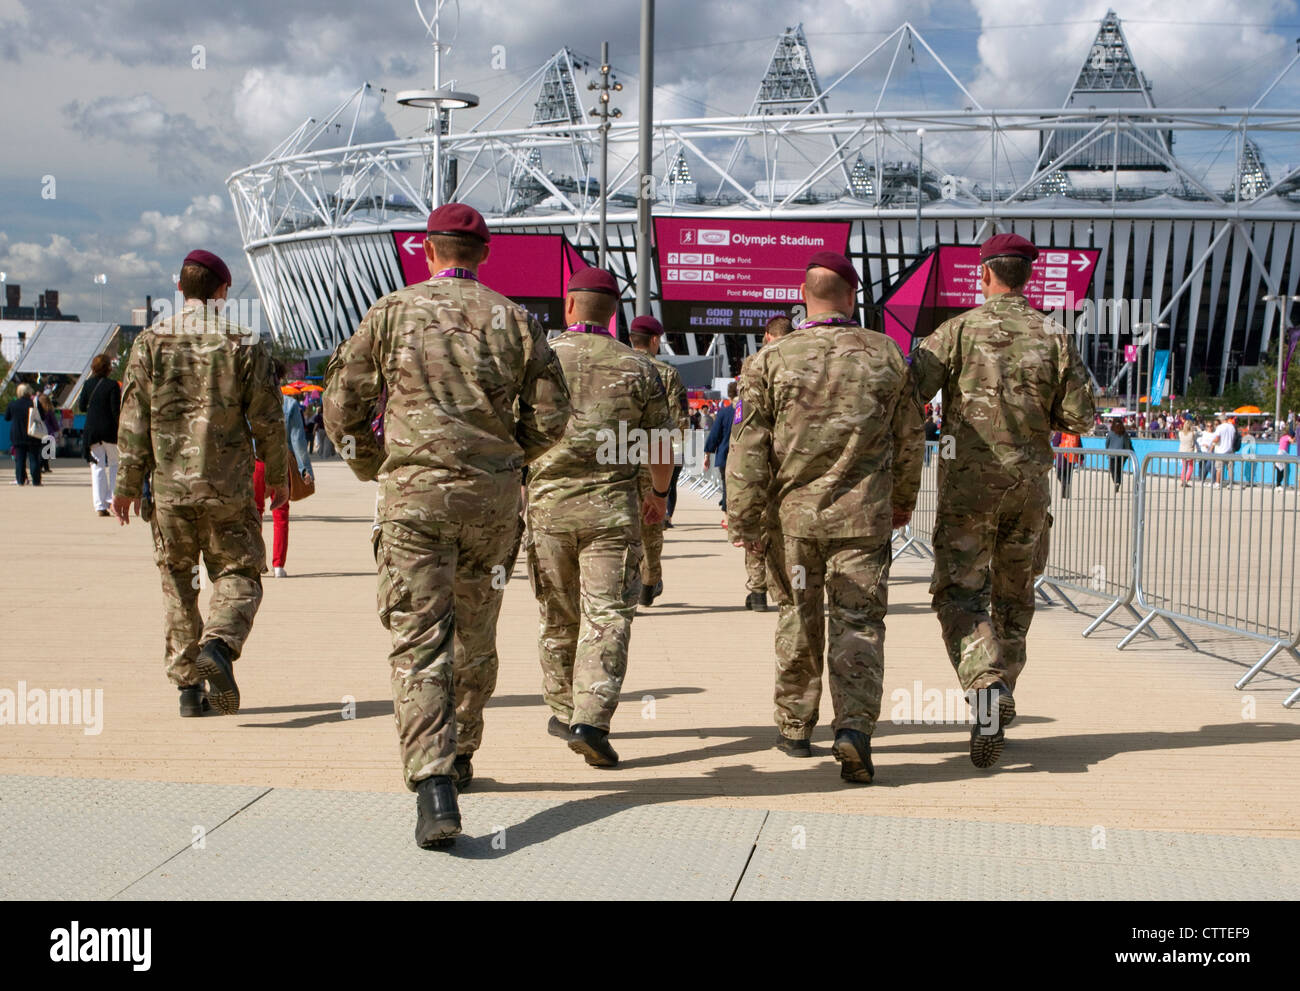 Les Jeux Olympiques de 2012 à Londres - le personnel de l'armée près de Stadium dans le Parc olympique Banque D'Images